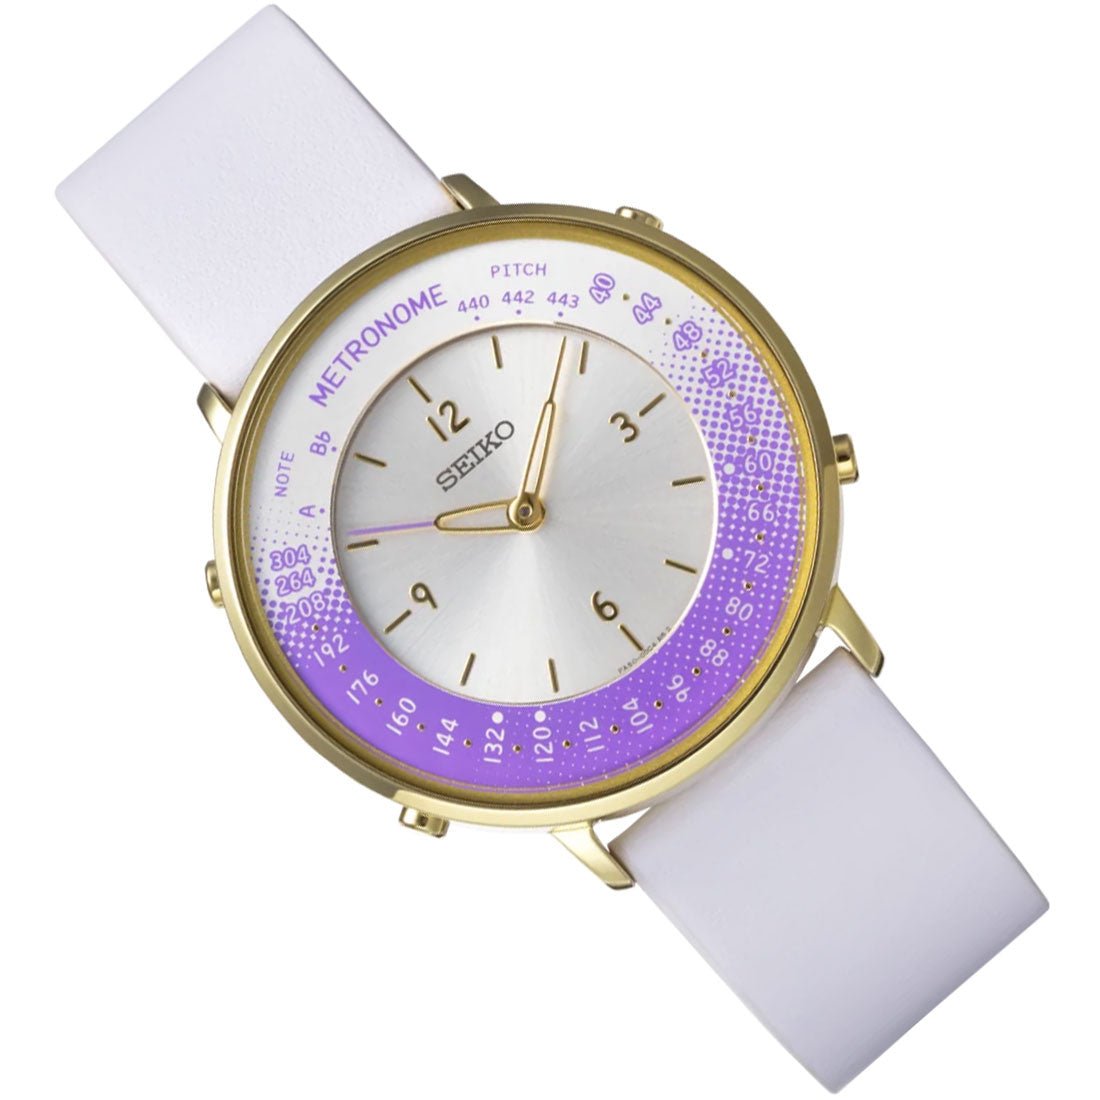 Seiko Metronome Purple Dial SMW003B White Leather Casual Watch -Seiko